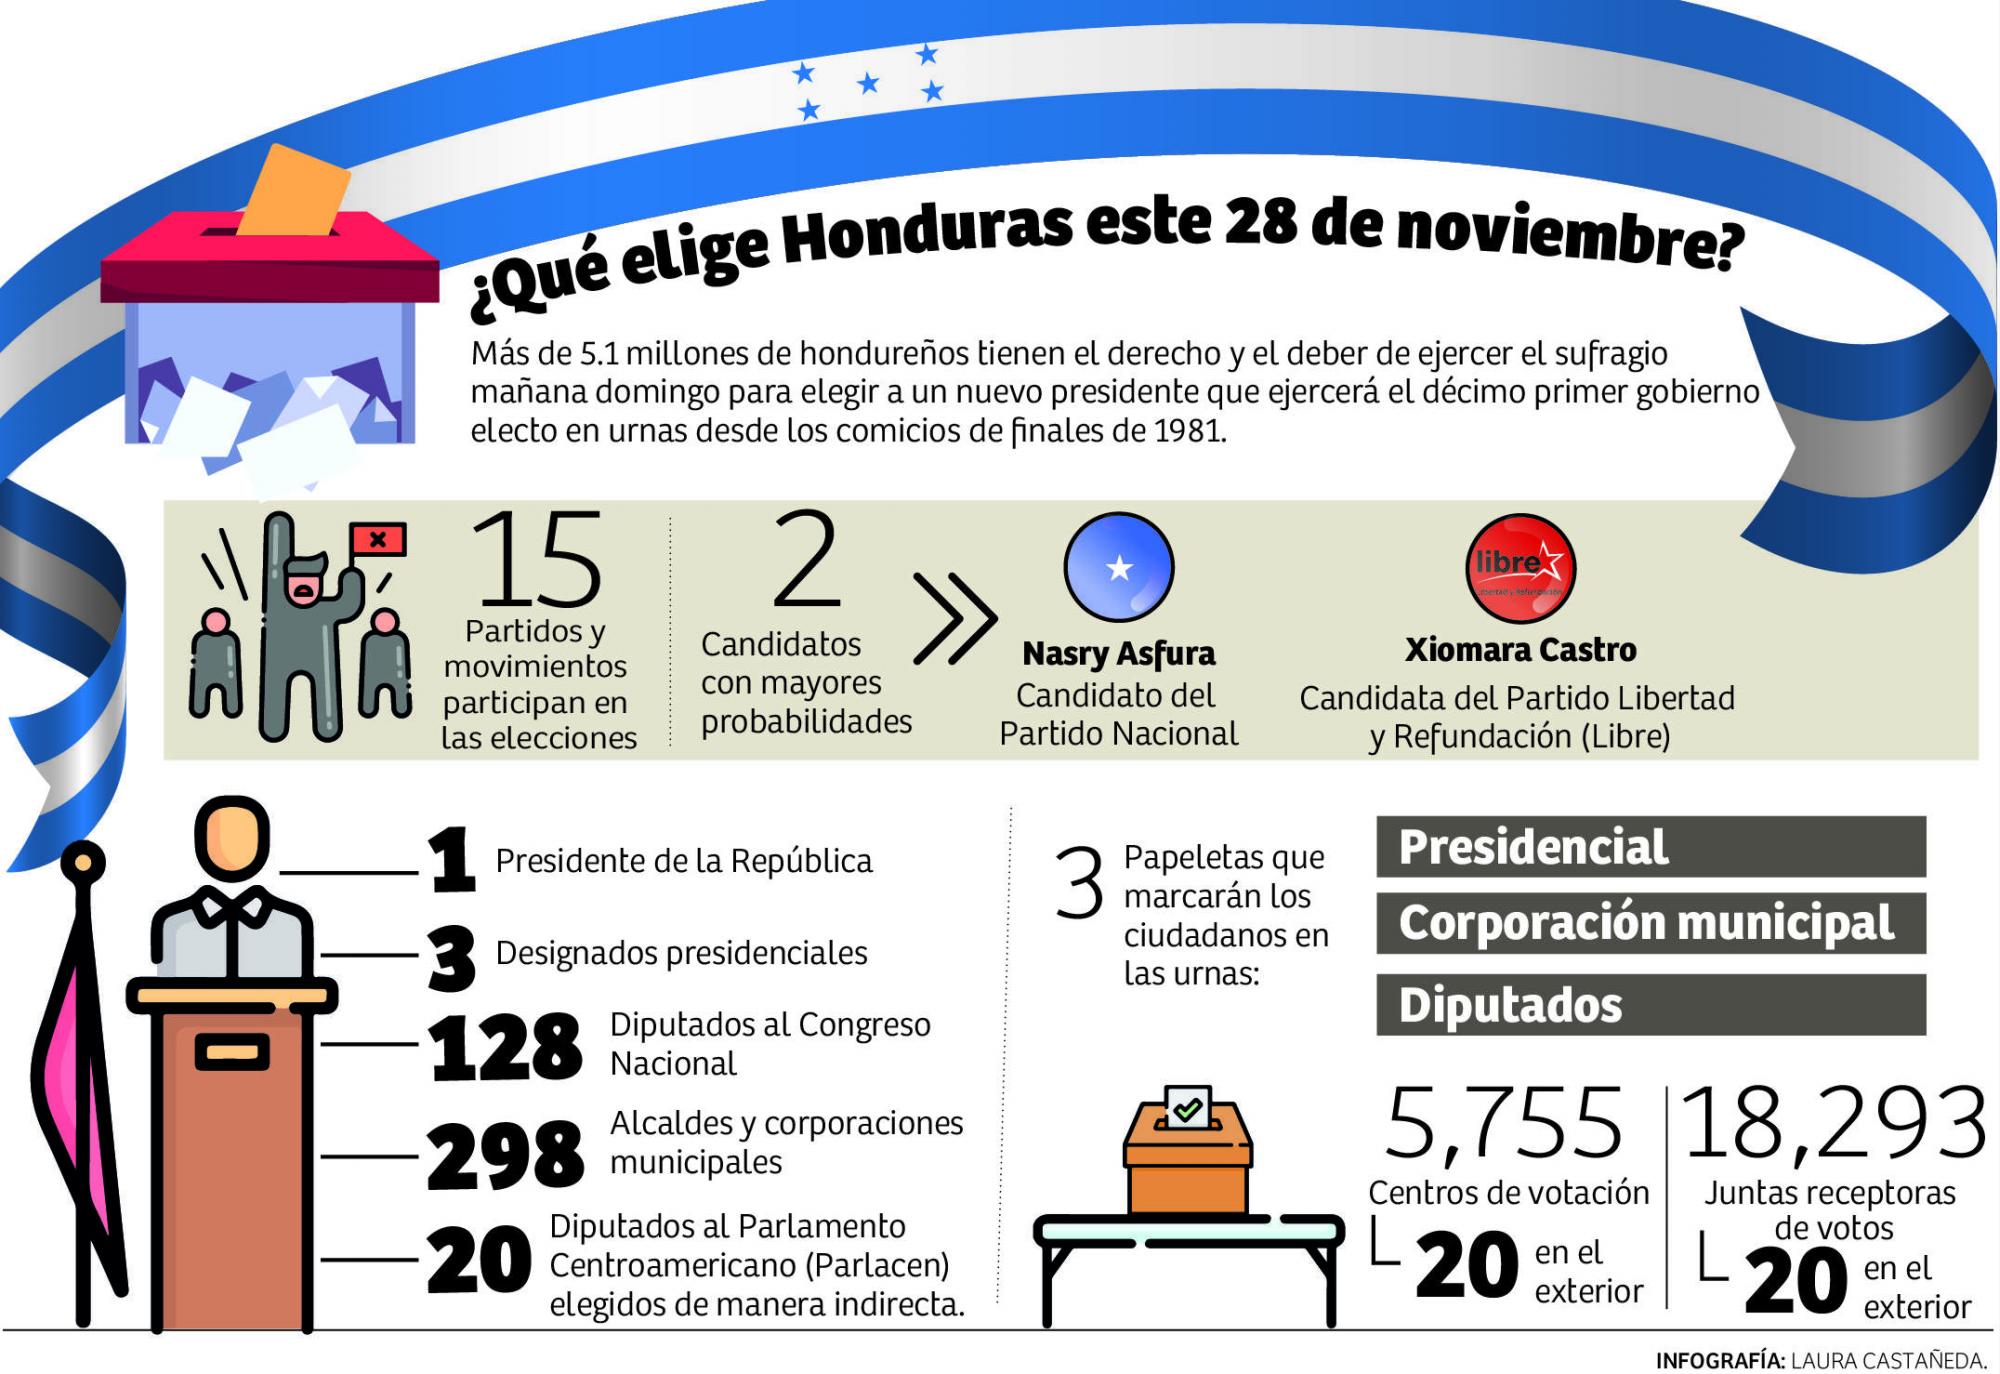 Por primera vez en la historia democrática de Honduras, más de 10,000 personas aspiran a un cargo de elección popular. Solo para diputados, los 15 partidos y movimientos postulan a 1,920 personas.